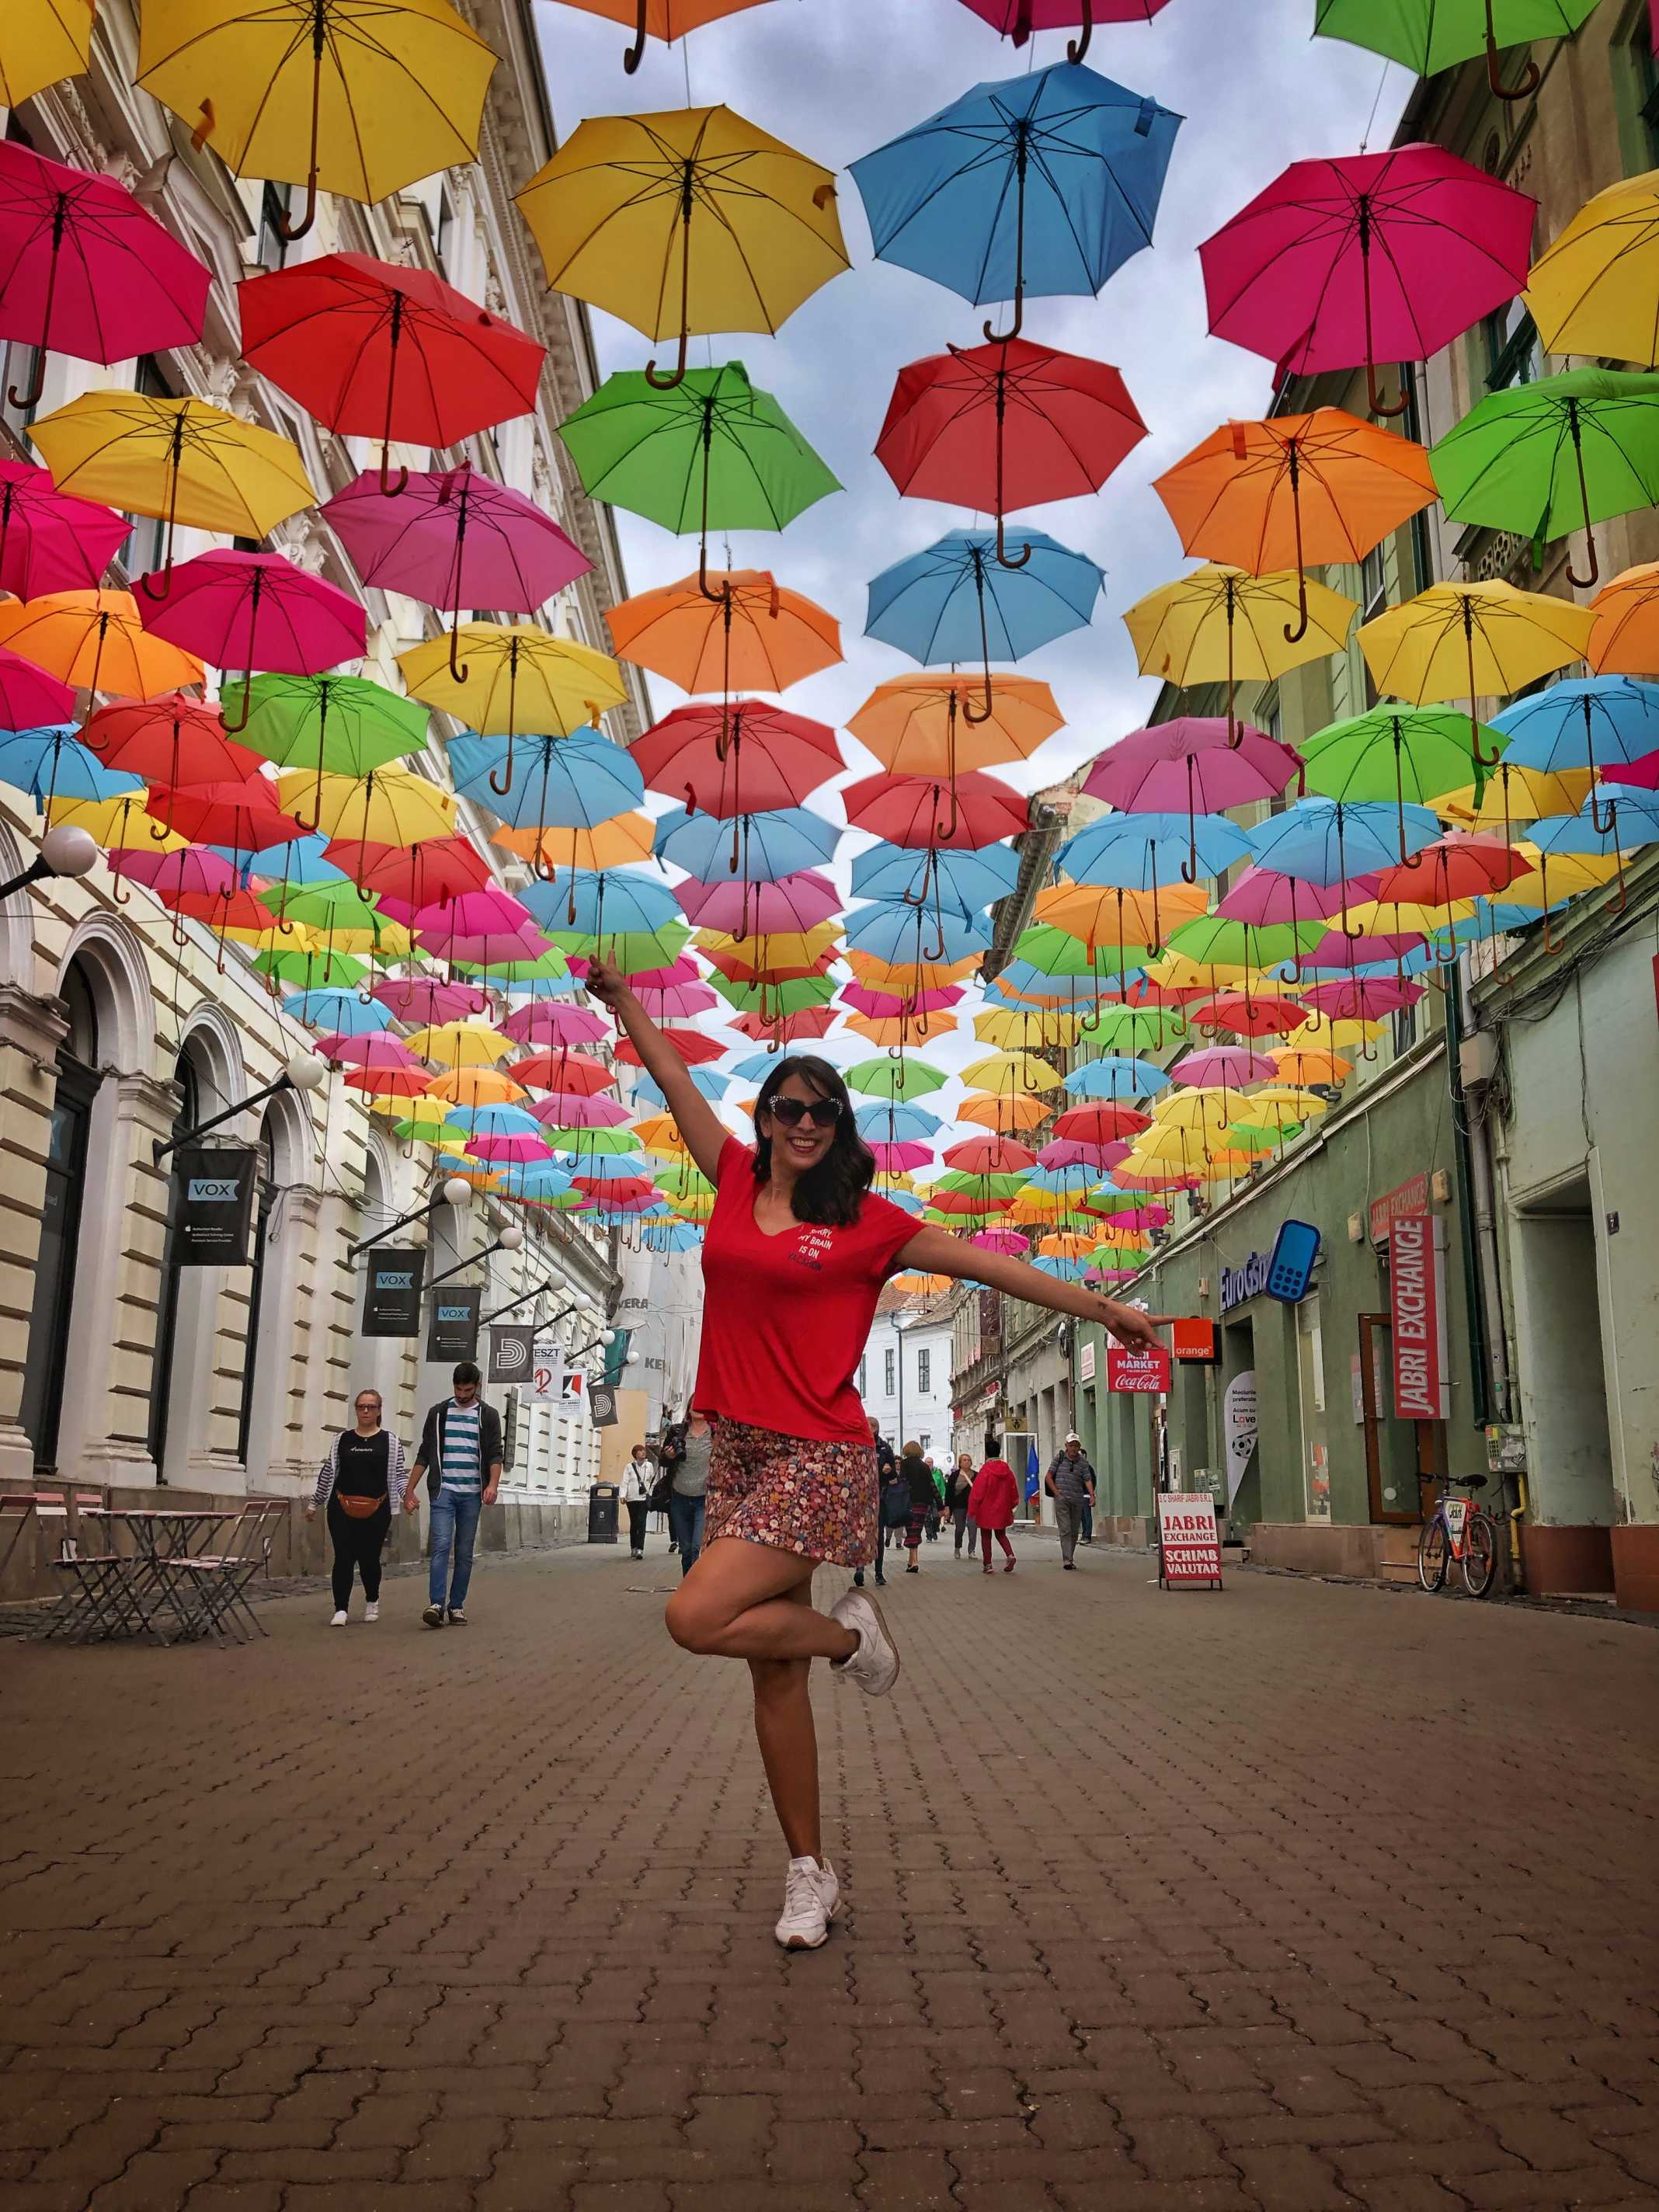 Umbrellas Timisoara Romania